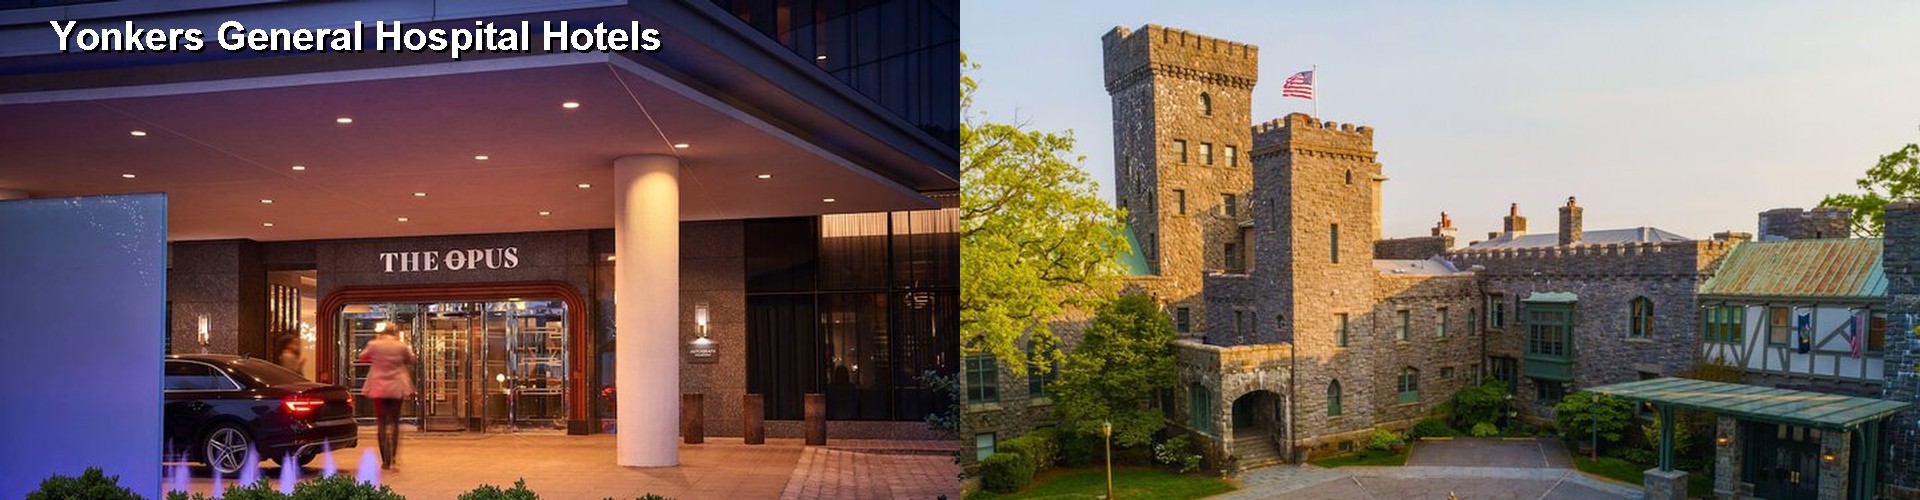 5 Best Hotels near Yonkers General Hospital